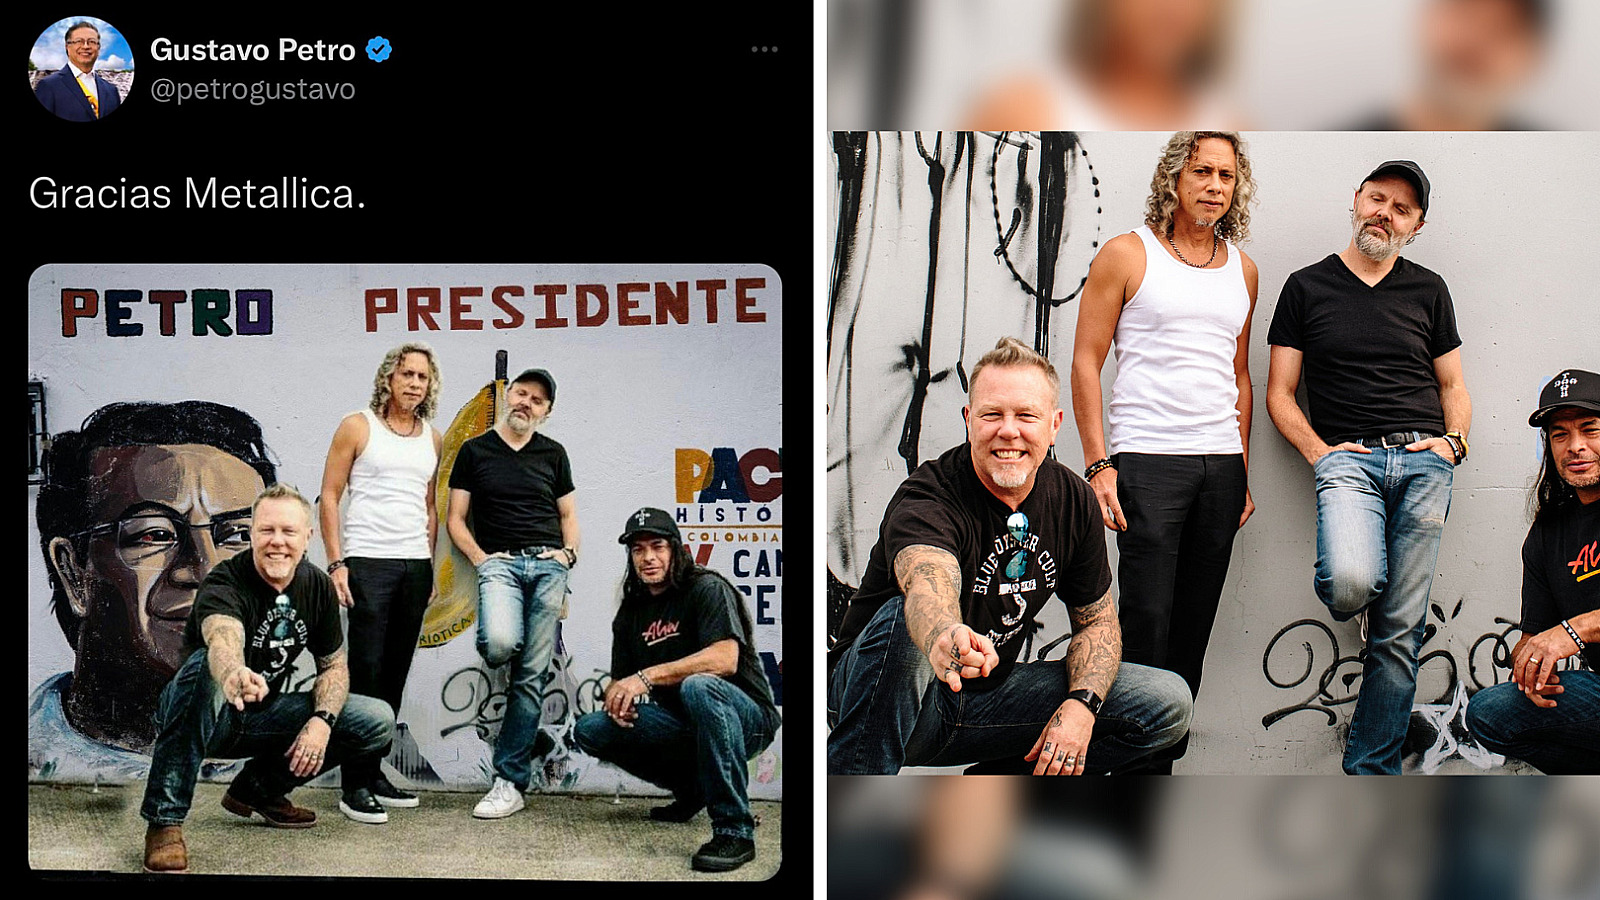 Petro cae en montaje de Metallica "apoyando" su campaña presidencial